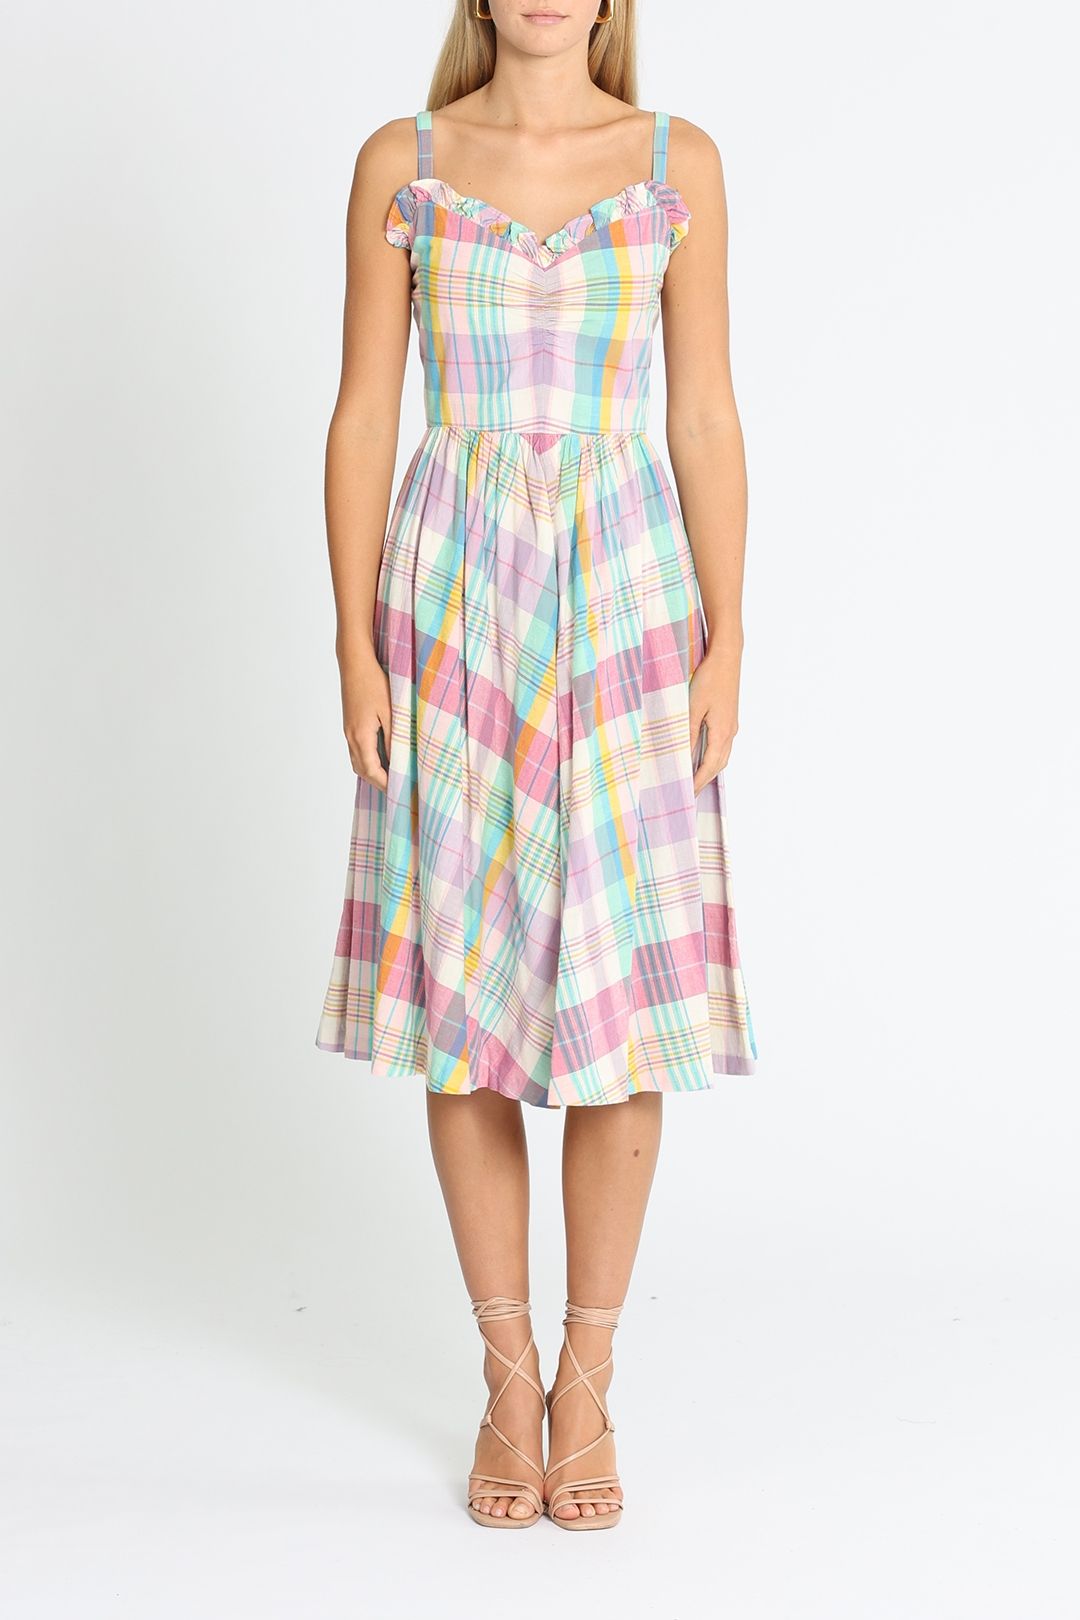 Ralph Lauren Multi Checkered Dress